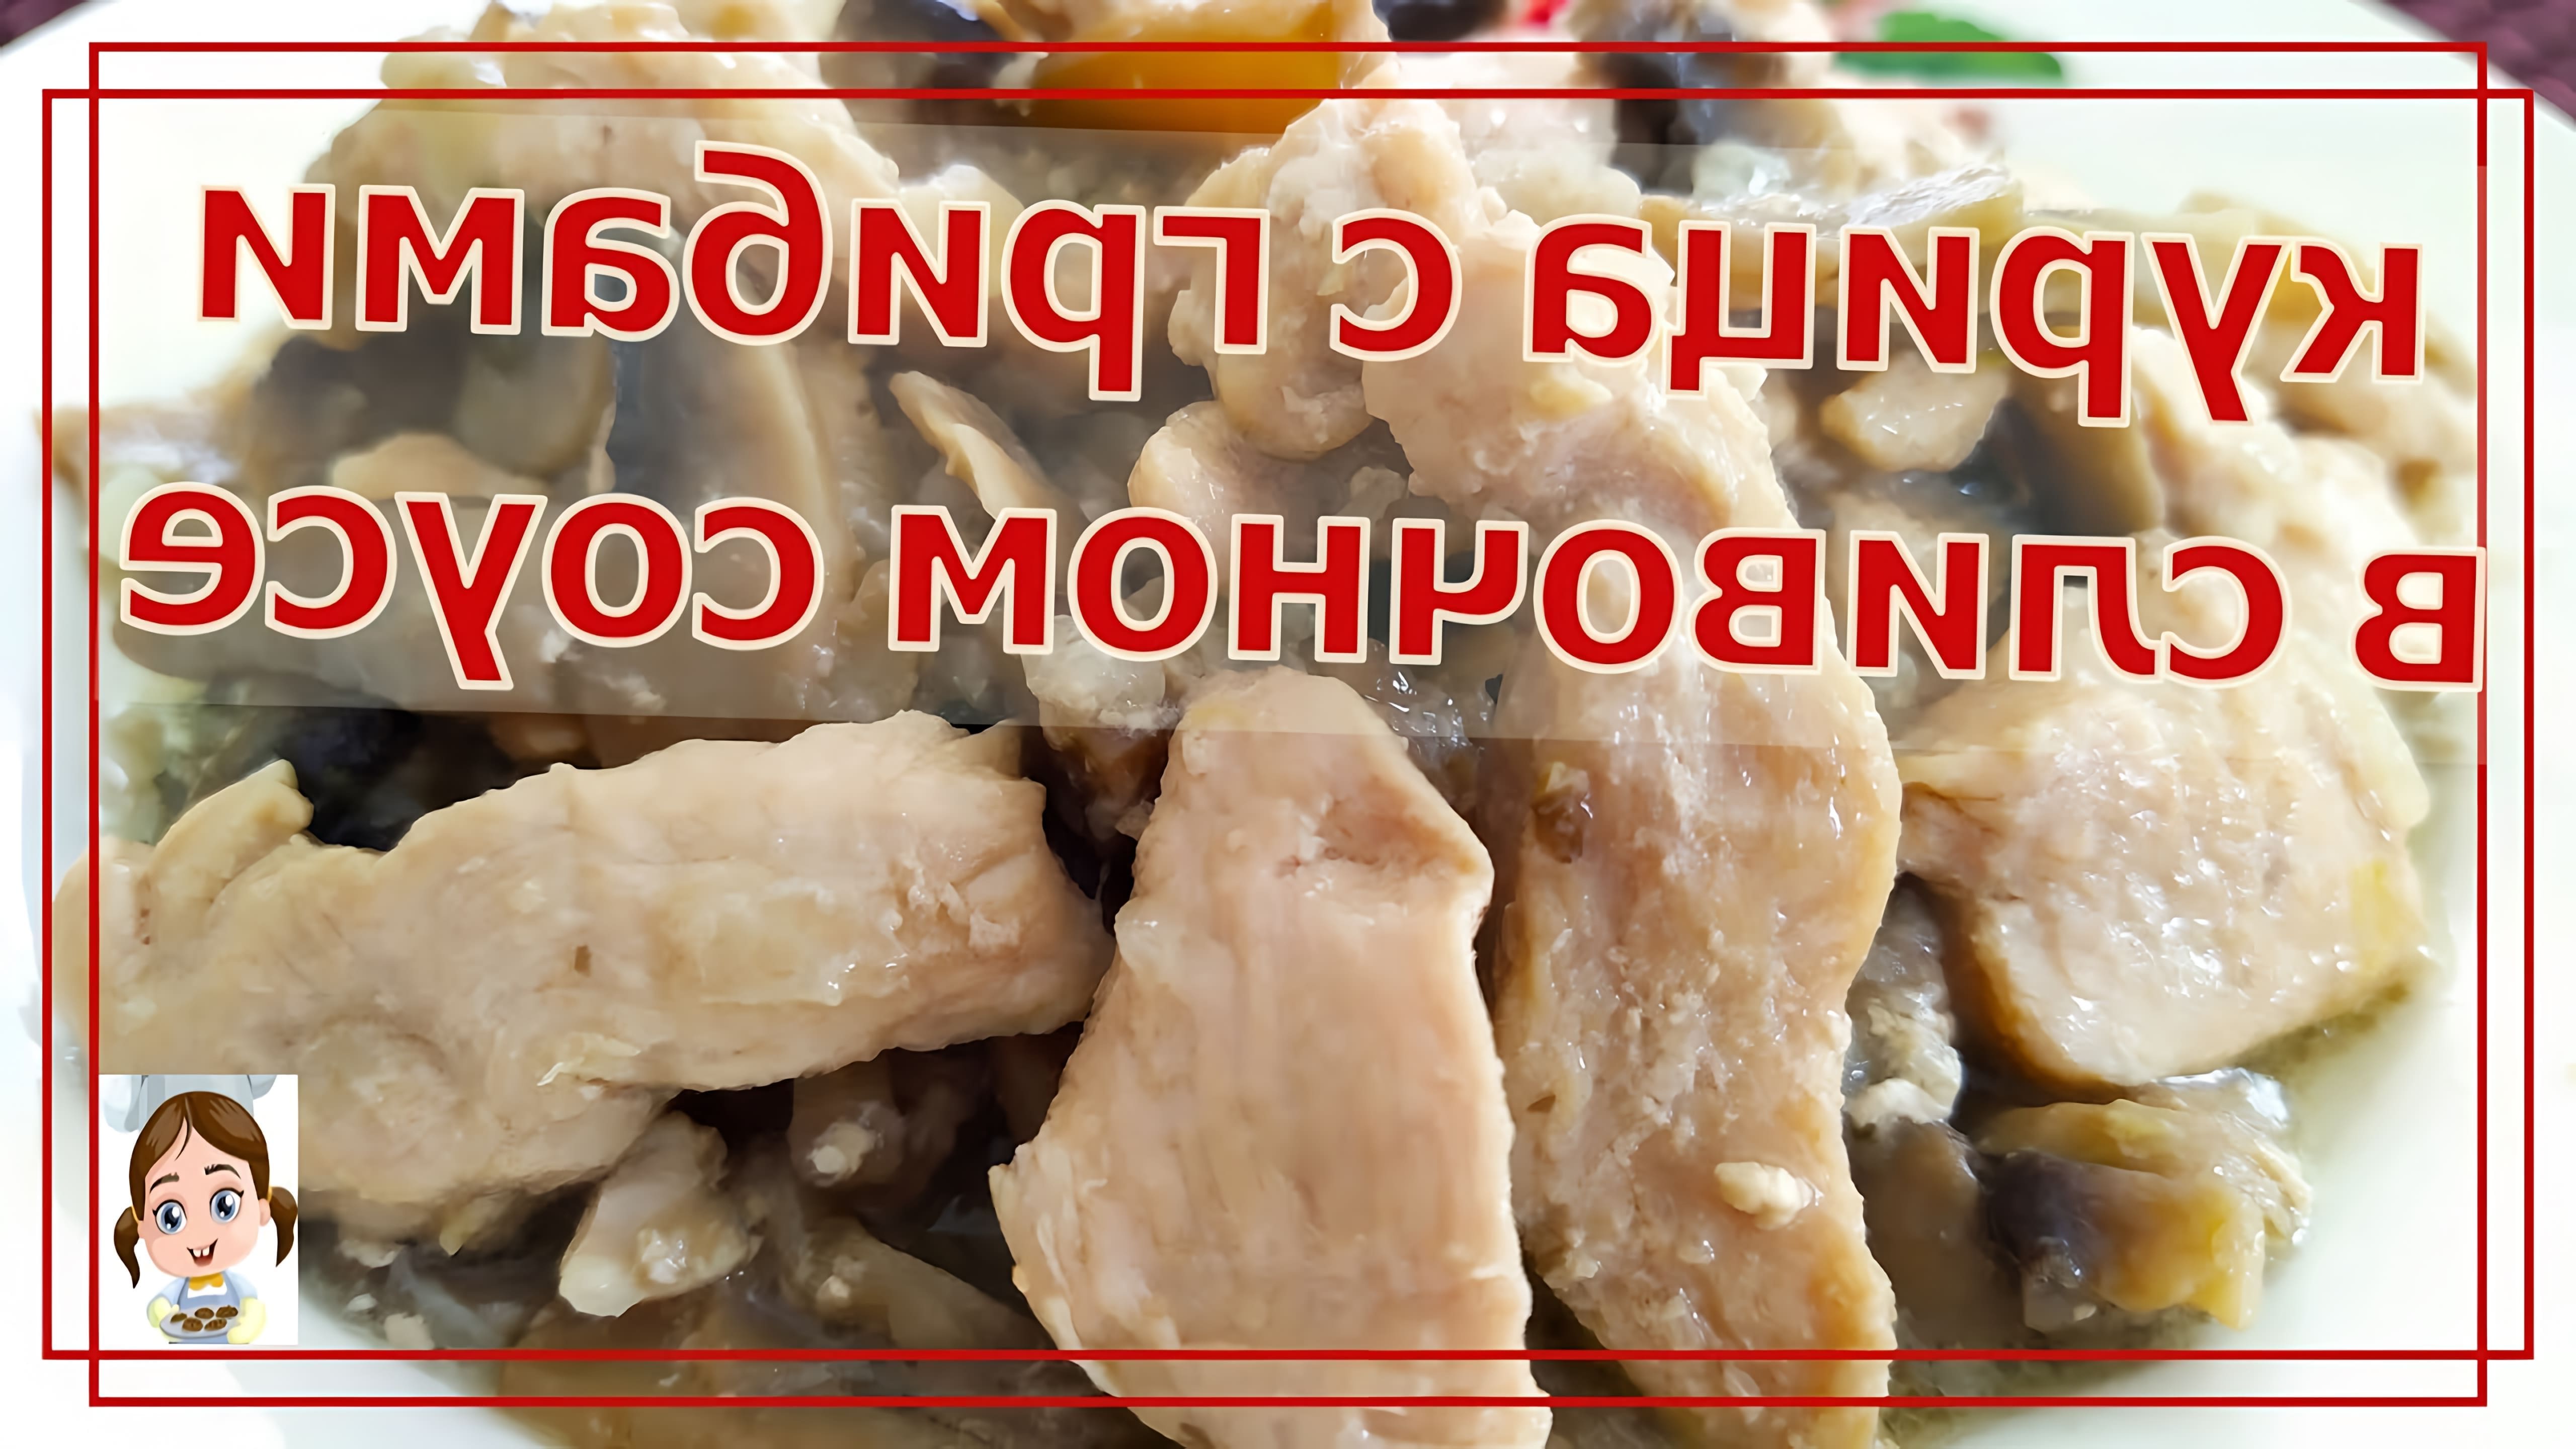 В этом видео-ролике будет показан простой и быстрый рецепт приготовления нежной курицы с шампиньонами в сливочном соусе